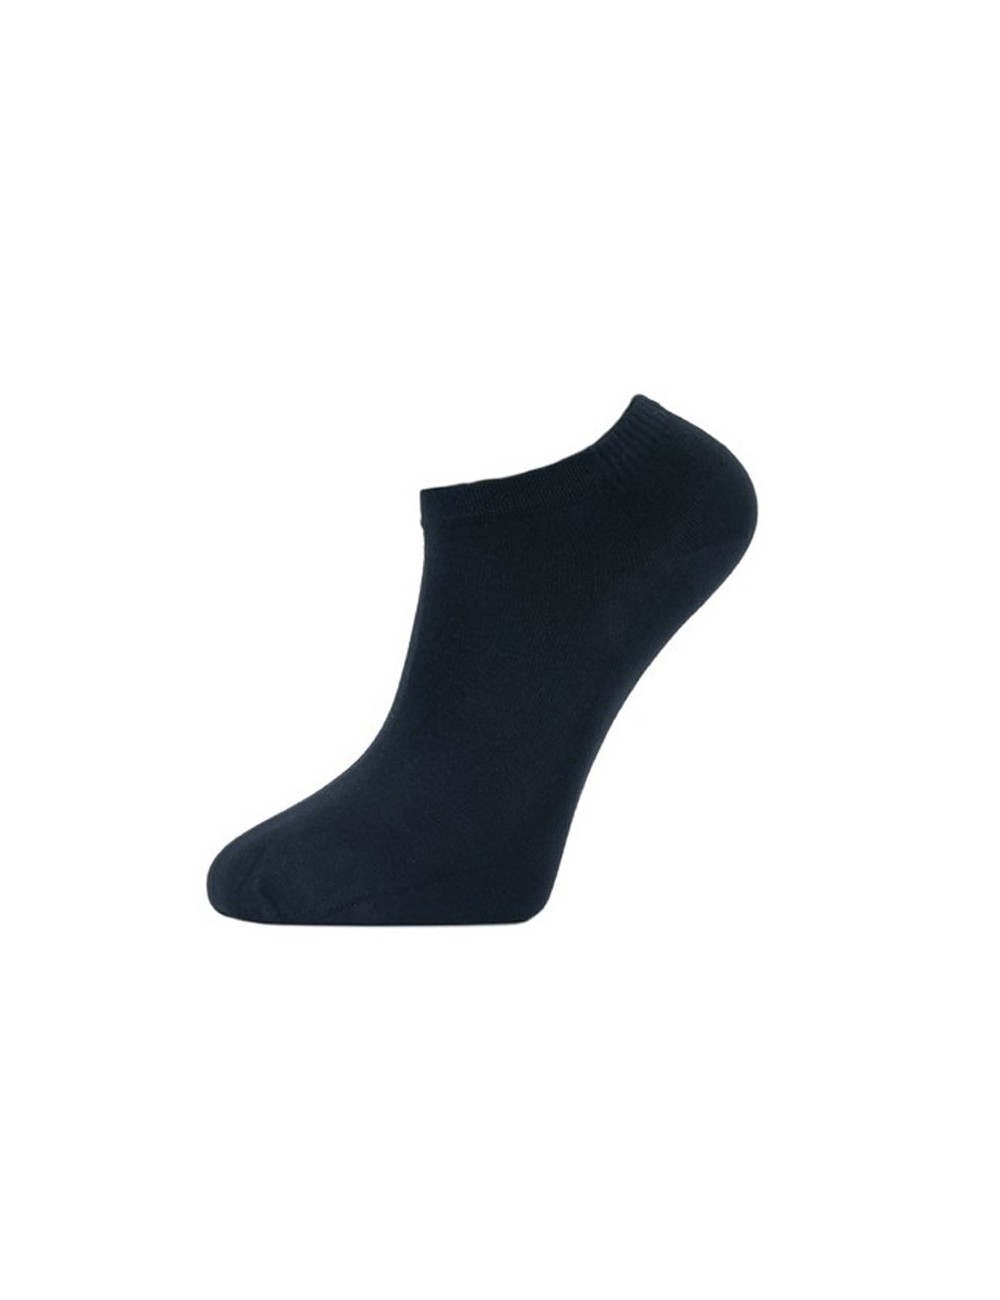 Χαμηλές παιδικές κάλτσες σοσόνι από Micromodal